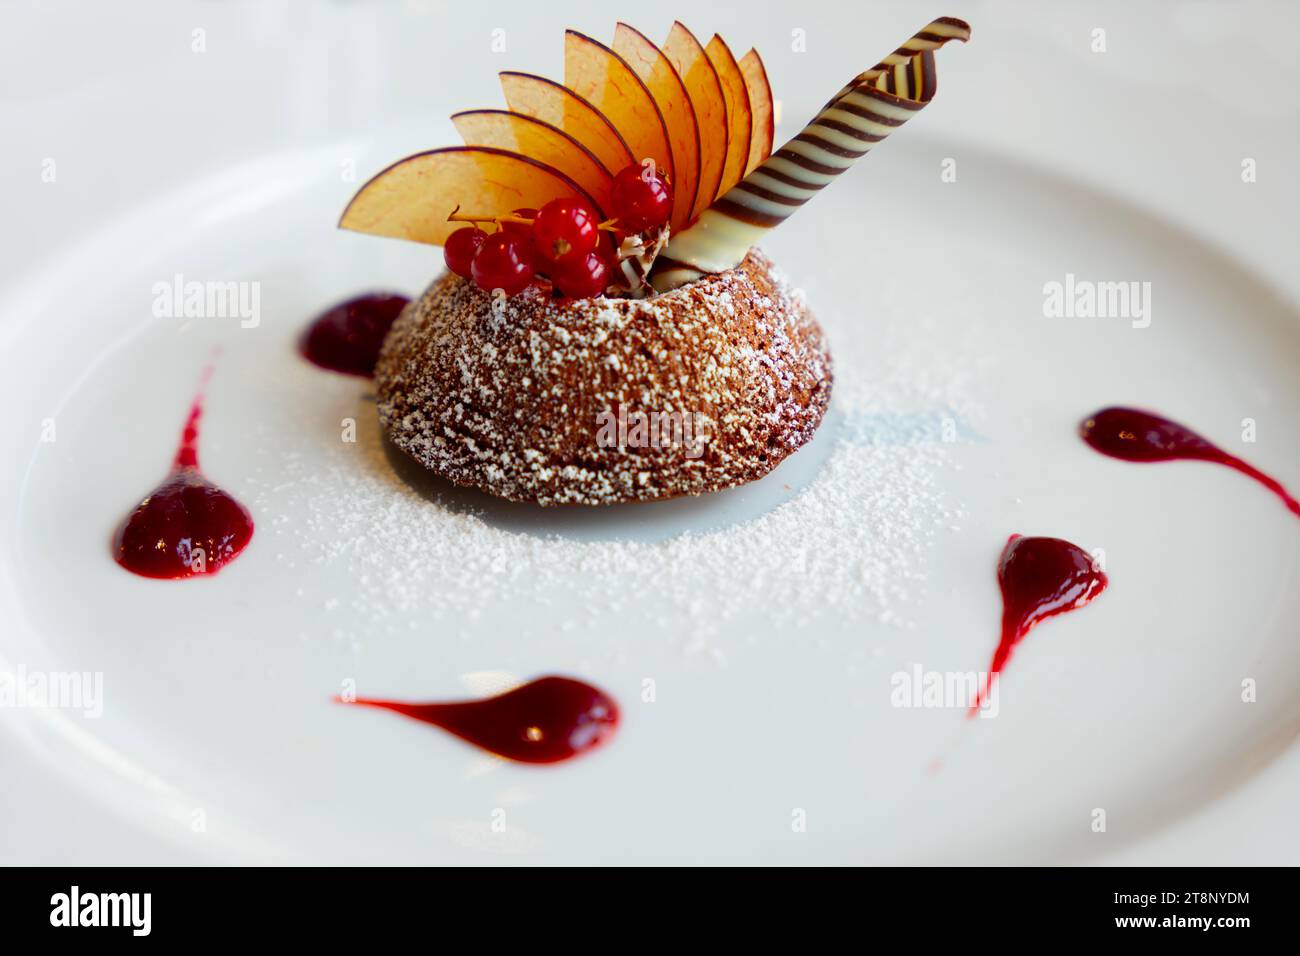 Wunderschönes Design Chocolate Mousse Dessert mit Obst auf einem Teller in der Schweiz Stockfoto